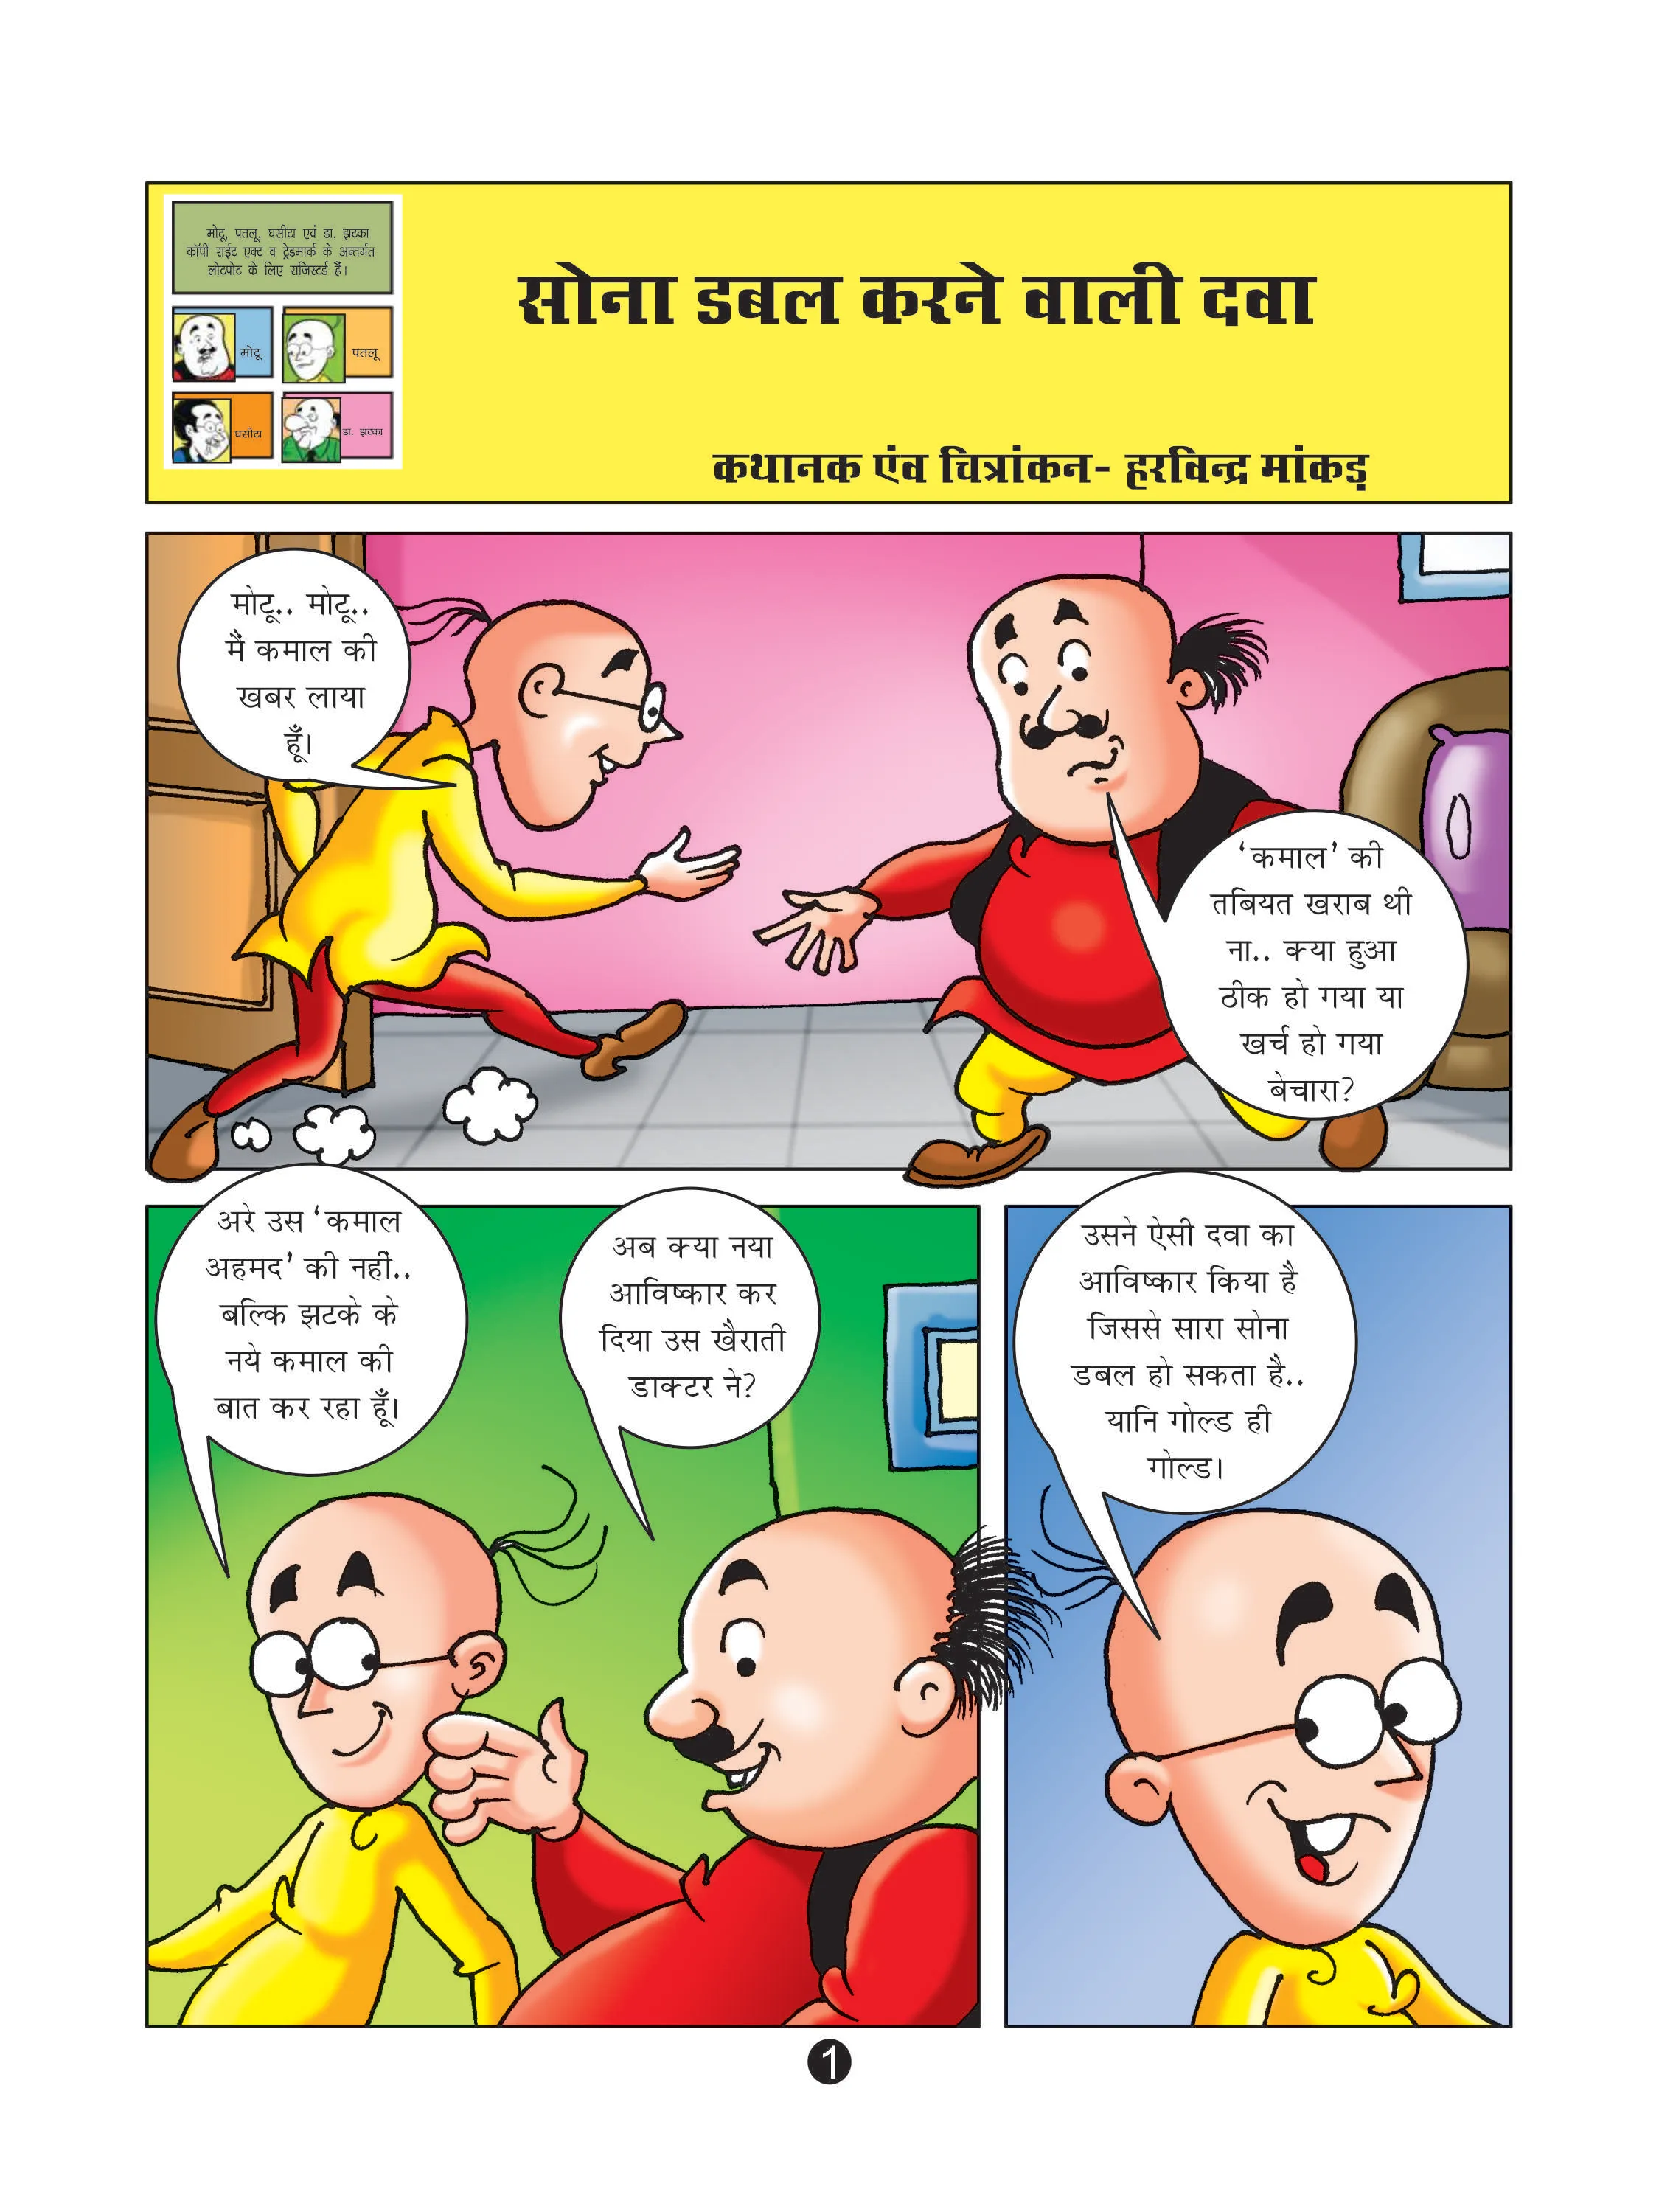 lotpot E-Comics cartoon character Motu Patlu